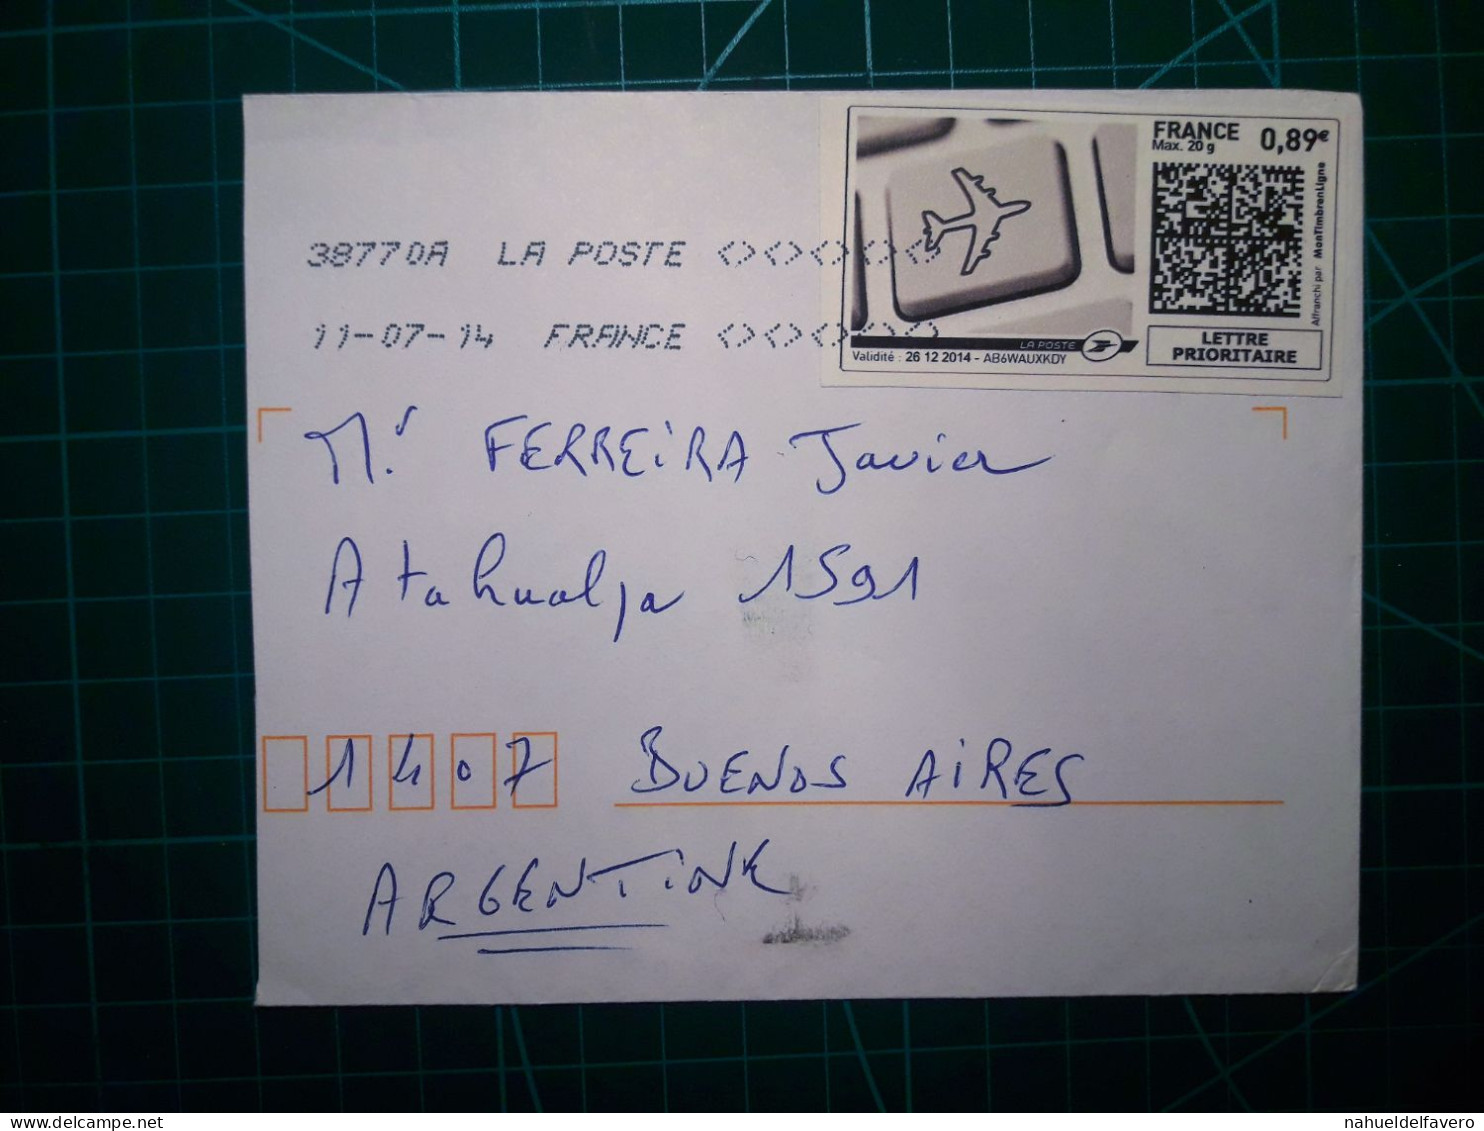 FRANCE, Enveloppe Envoyée à Buenos Aires, Argentine Avec Cachet Numérique Et Code QR. Année 2007. - Gebraucht